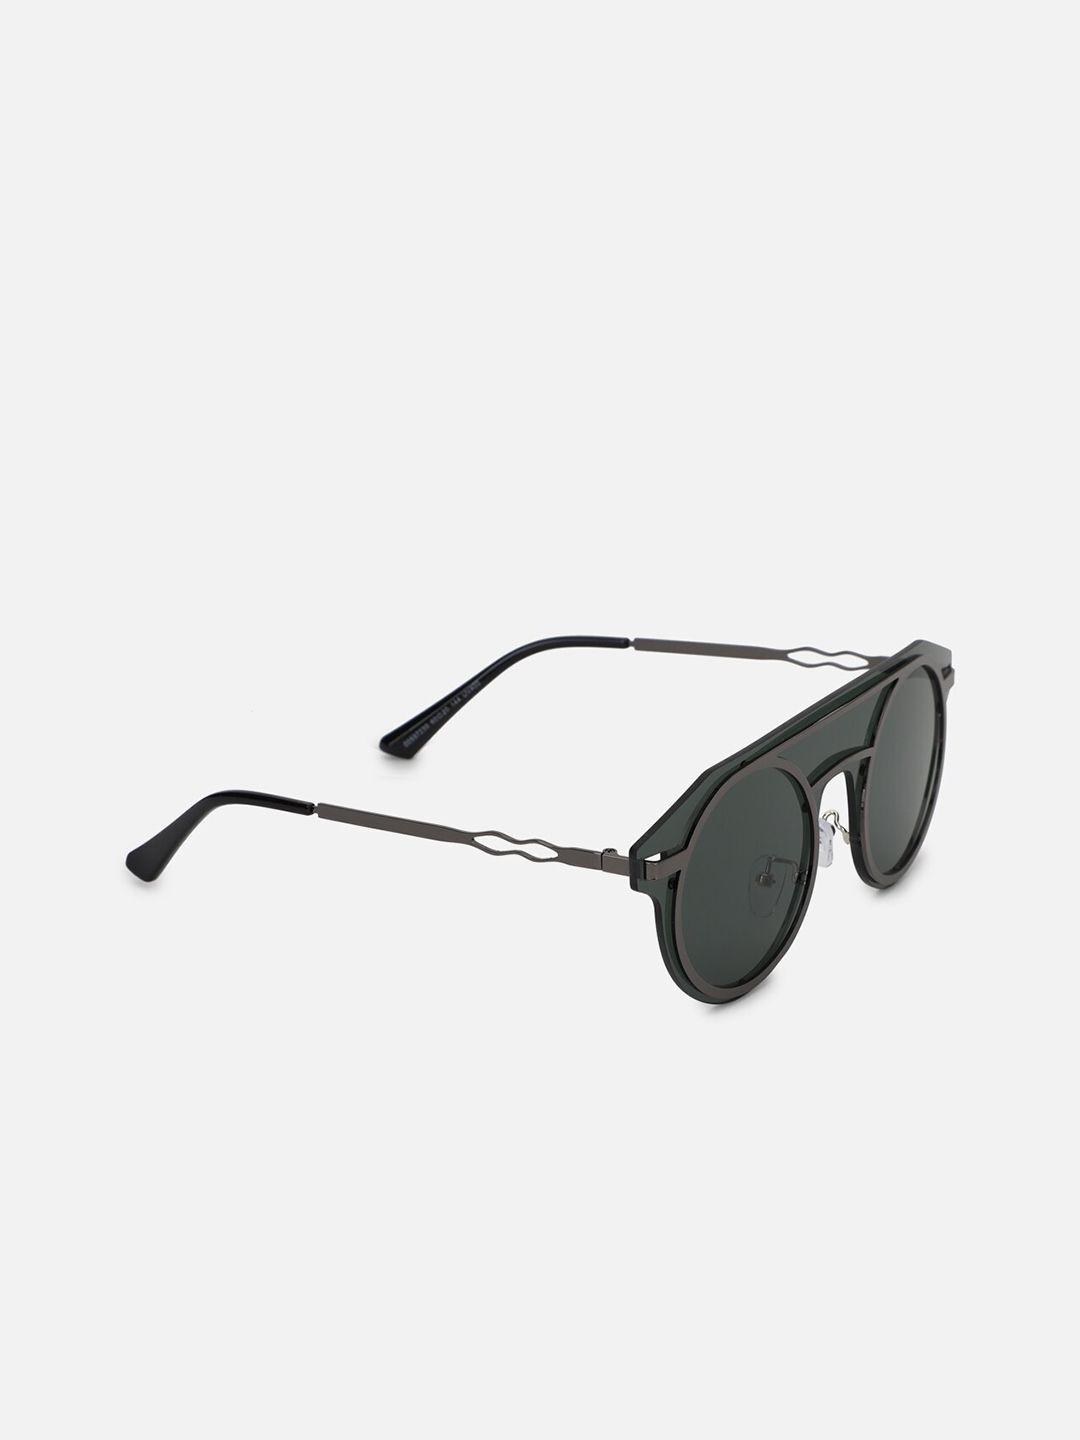 forever-21-women-black-lens-&-round-sunglasses-59723907